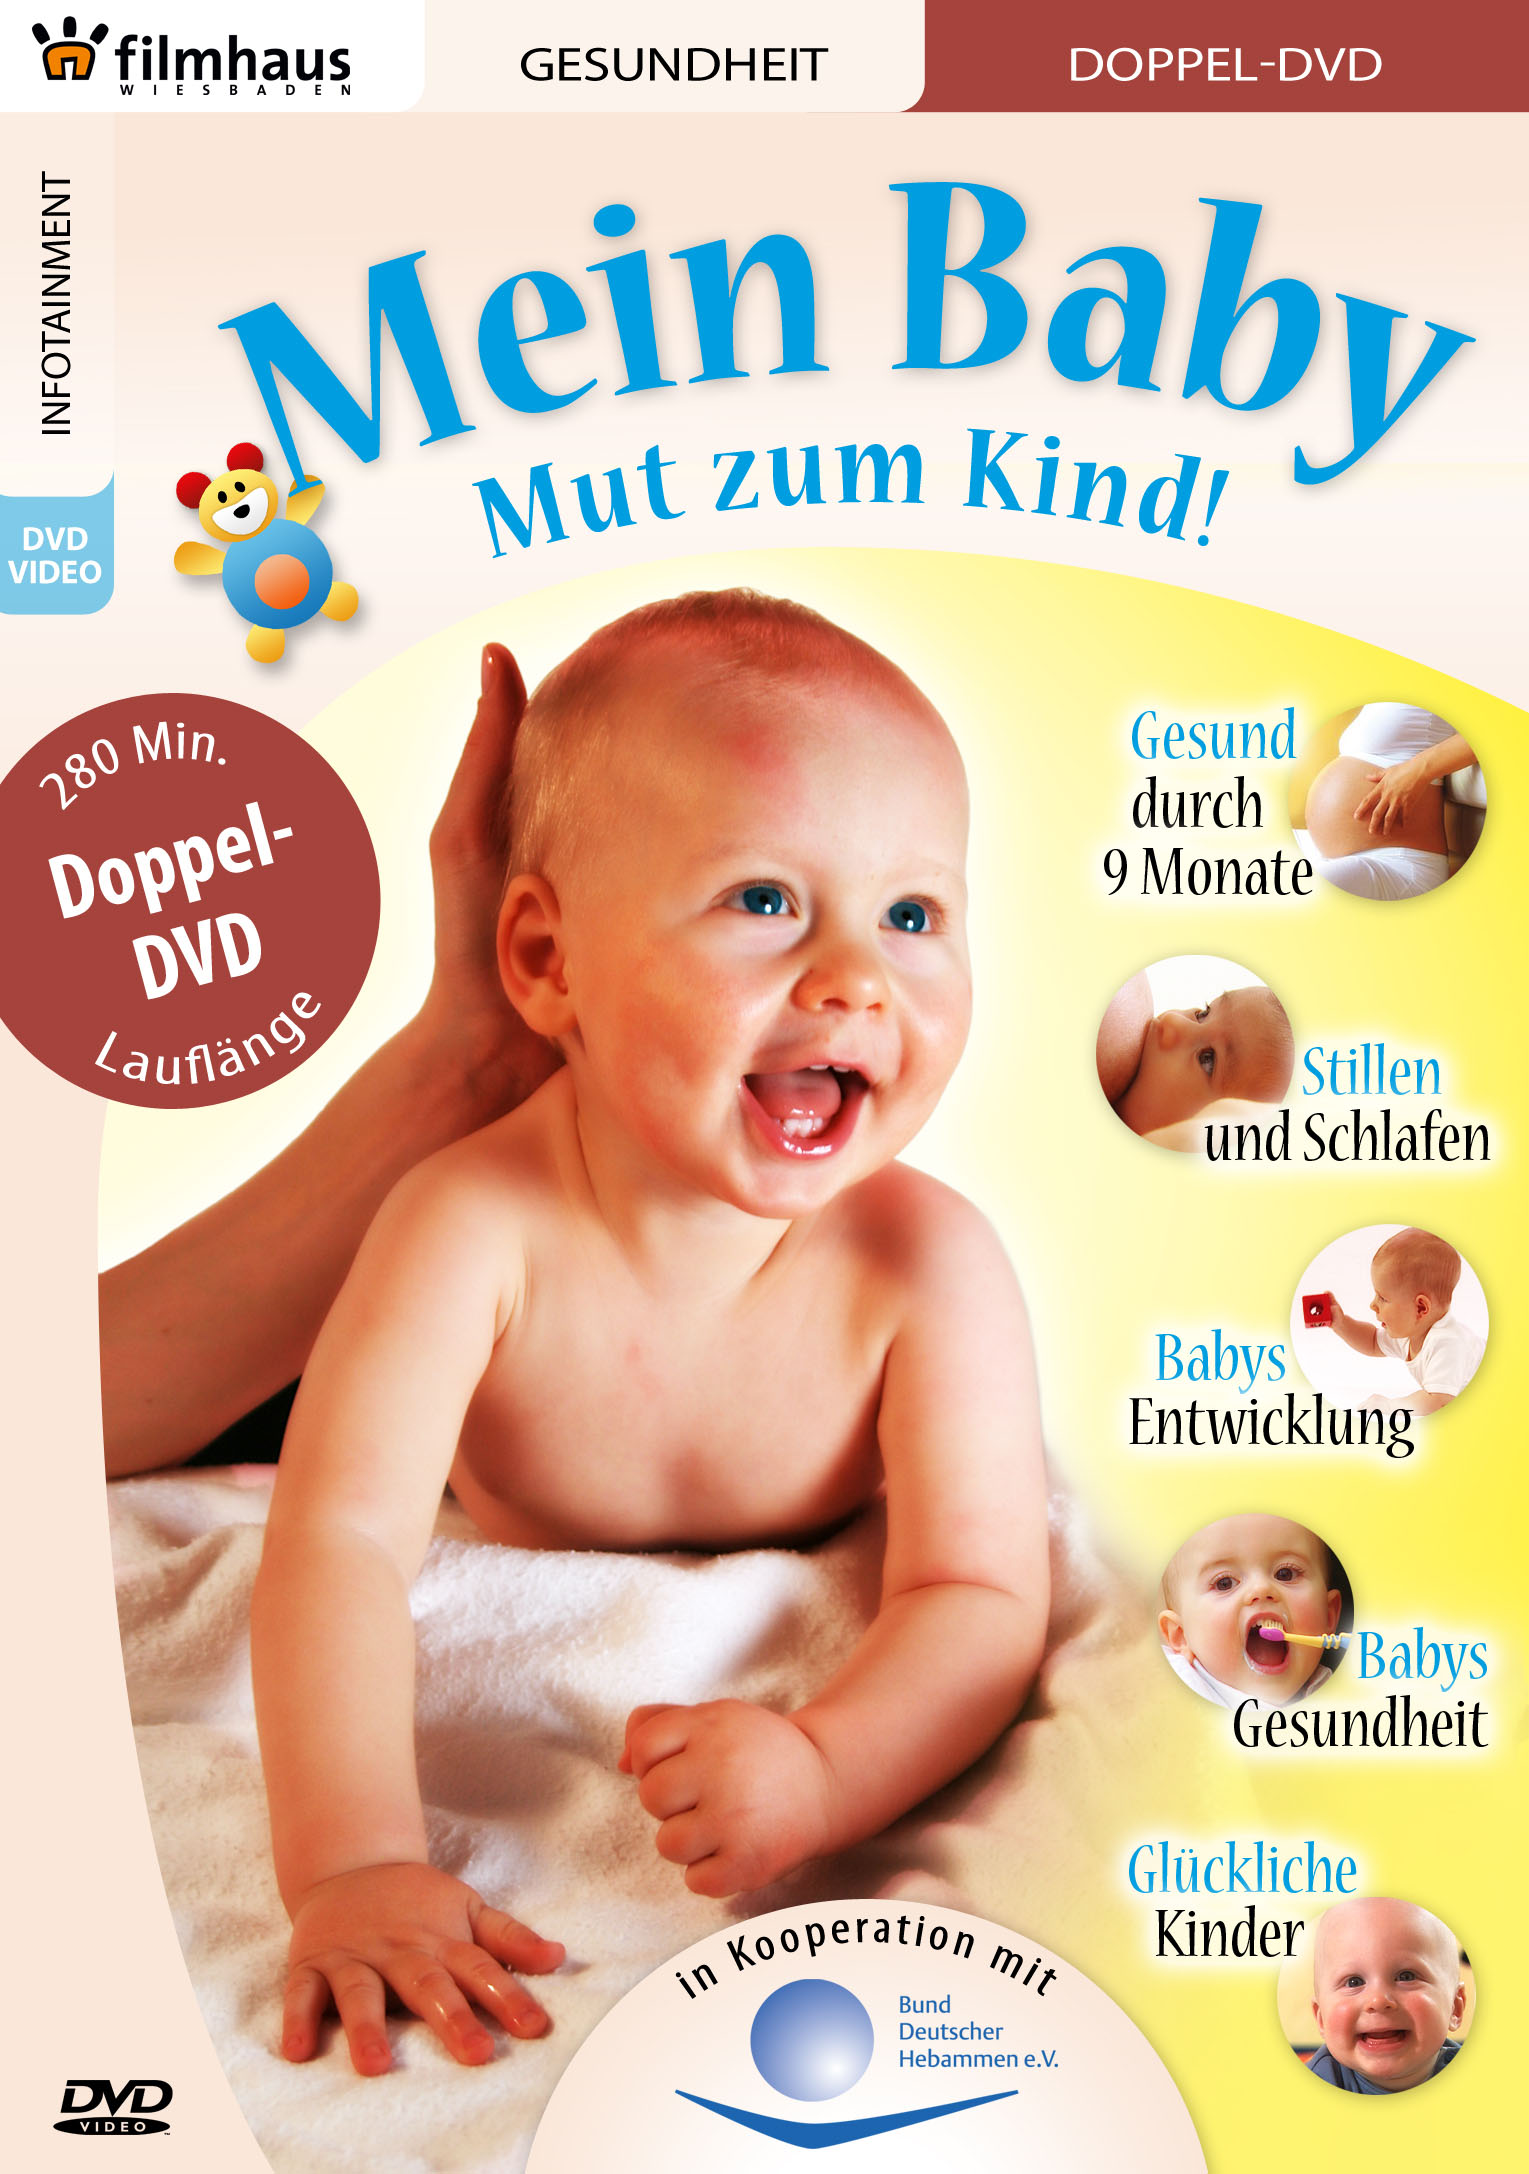 DVD Umfangreich - "Mein Baby" - Mut zum Kind!